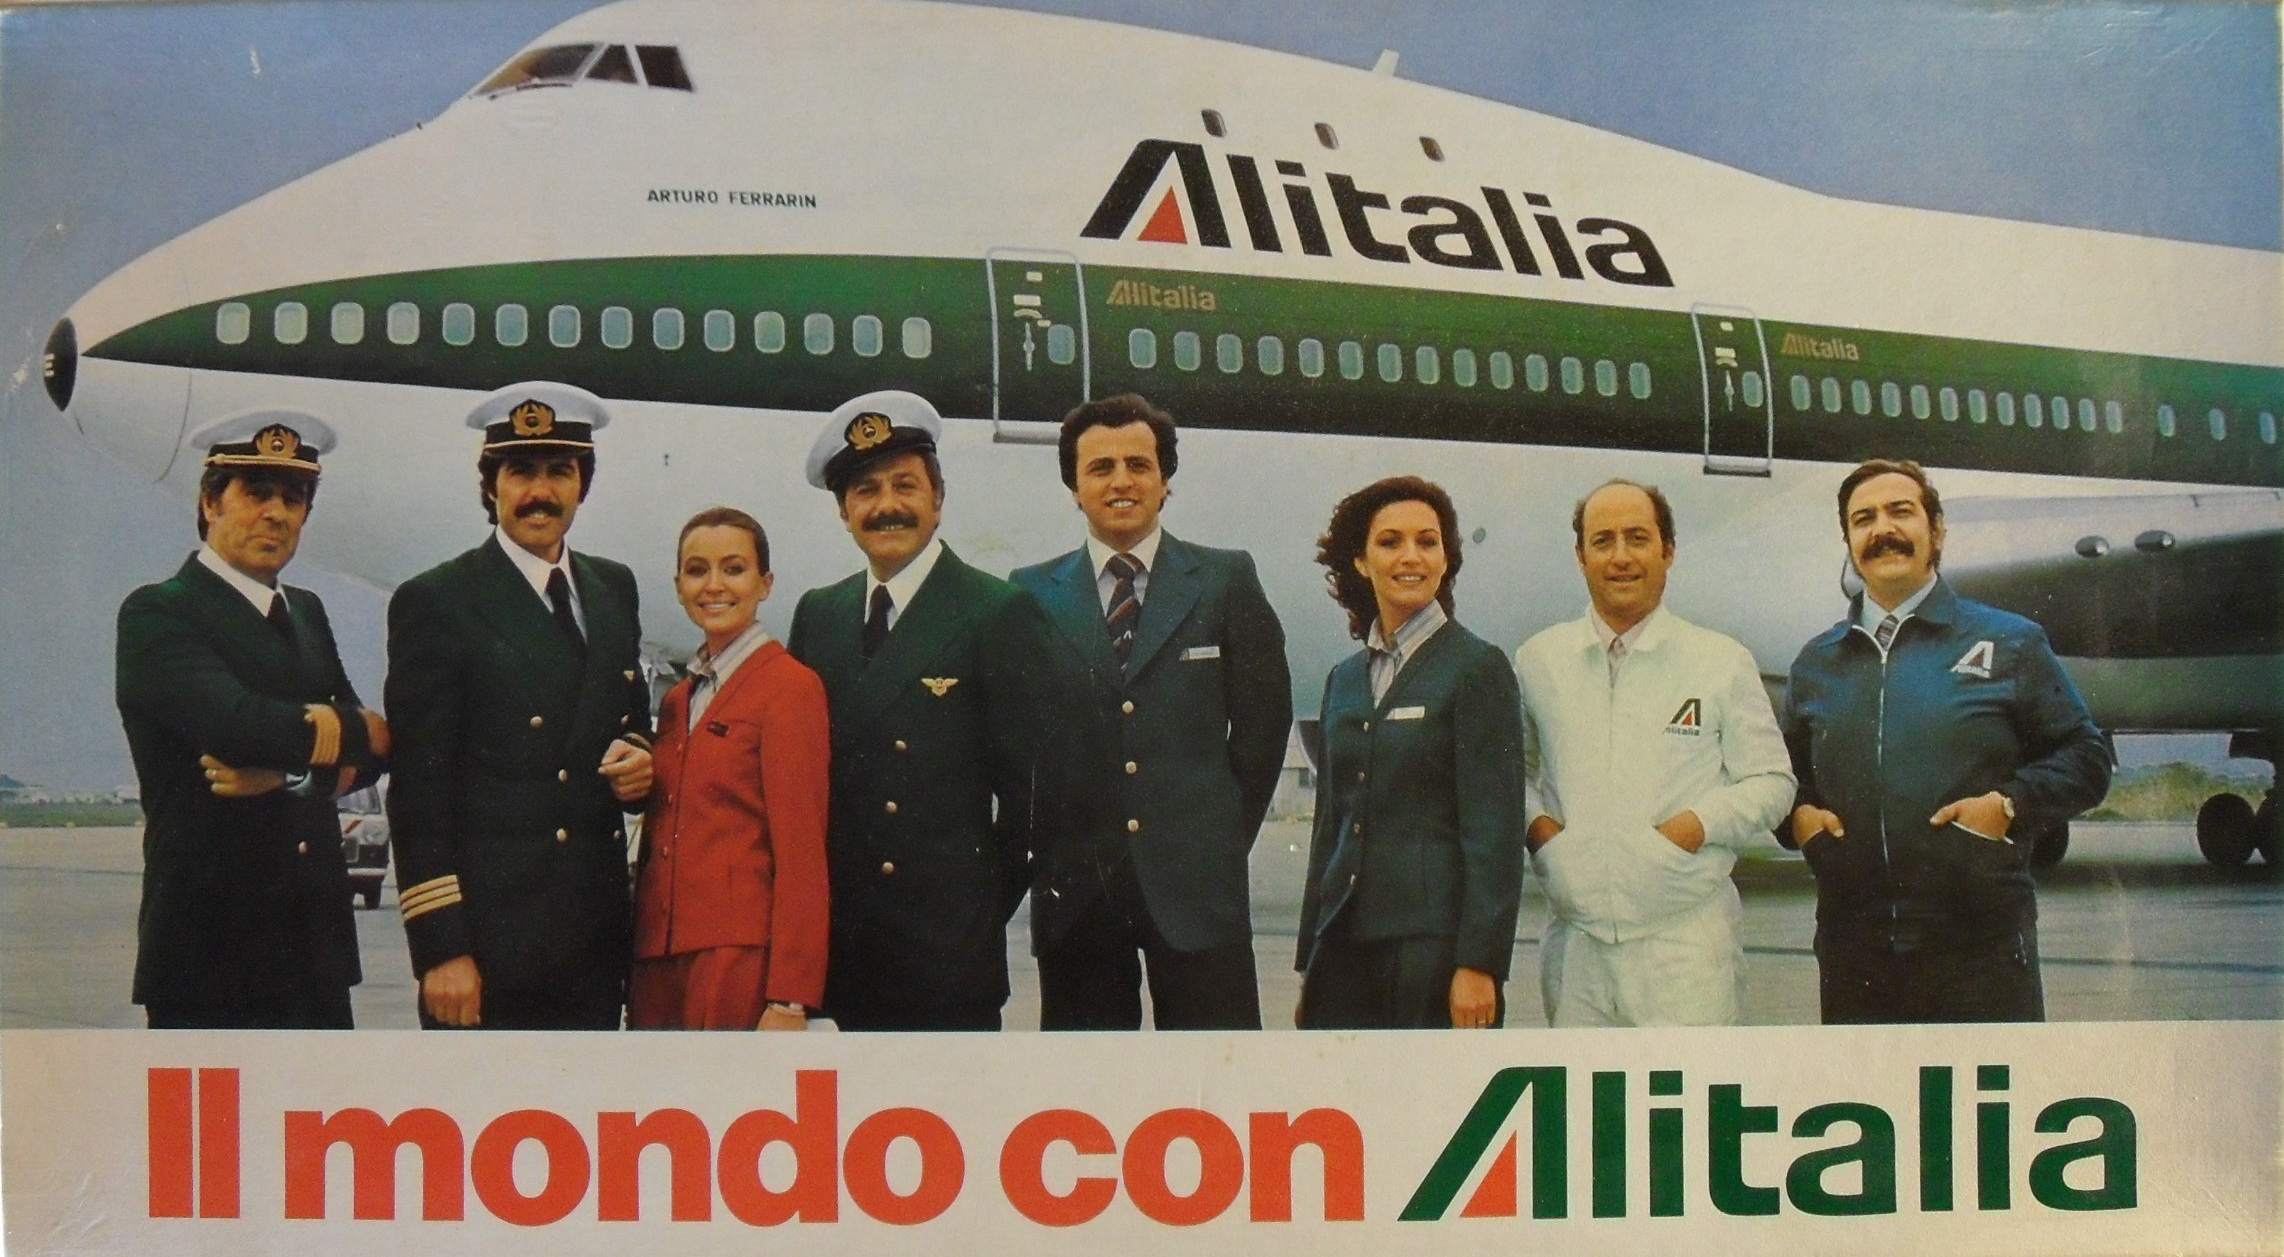 Il Mondo con Alitalia